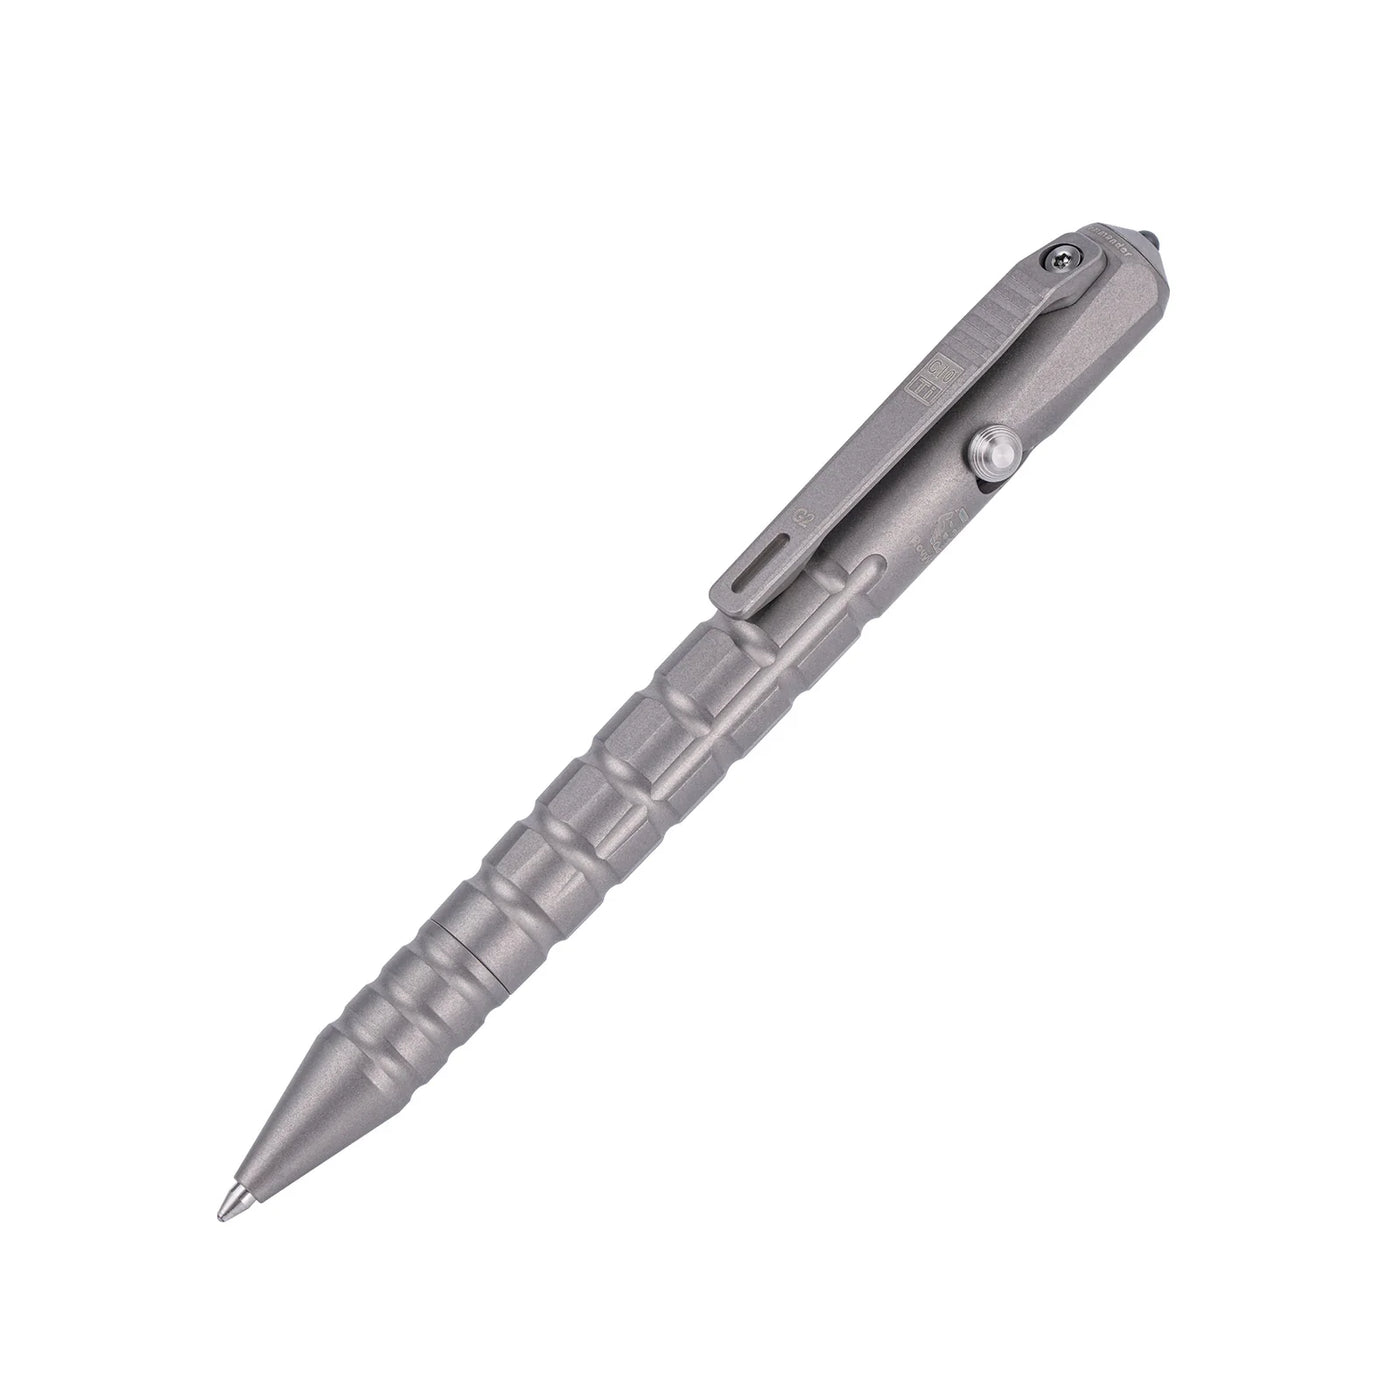 RovyVon - Commander C10 (G2) Titanium Bolt-action Tactical Pen